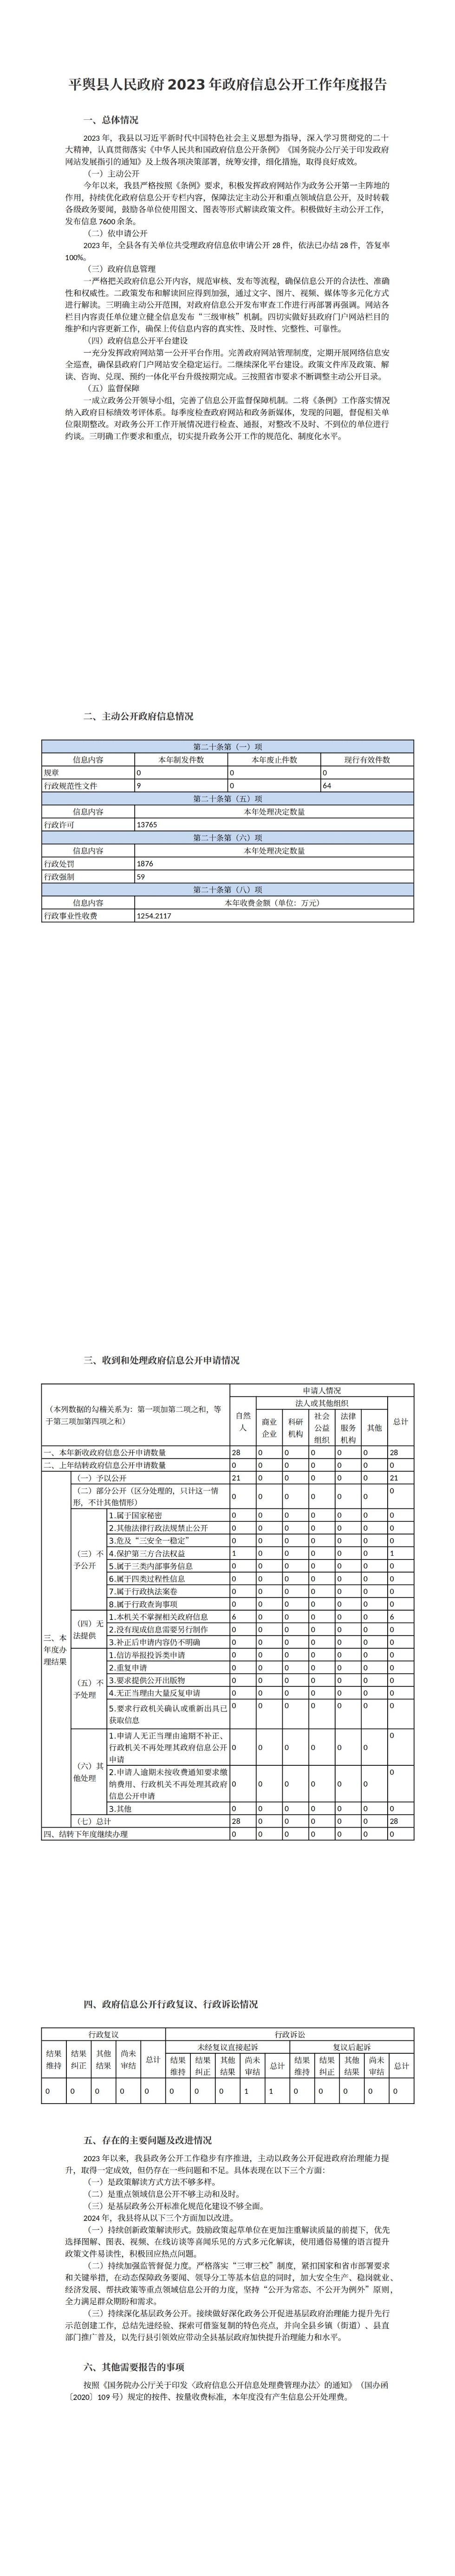 平舆县人民政府2023年政府信息公开工作年度报告 (1)_00.jpg